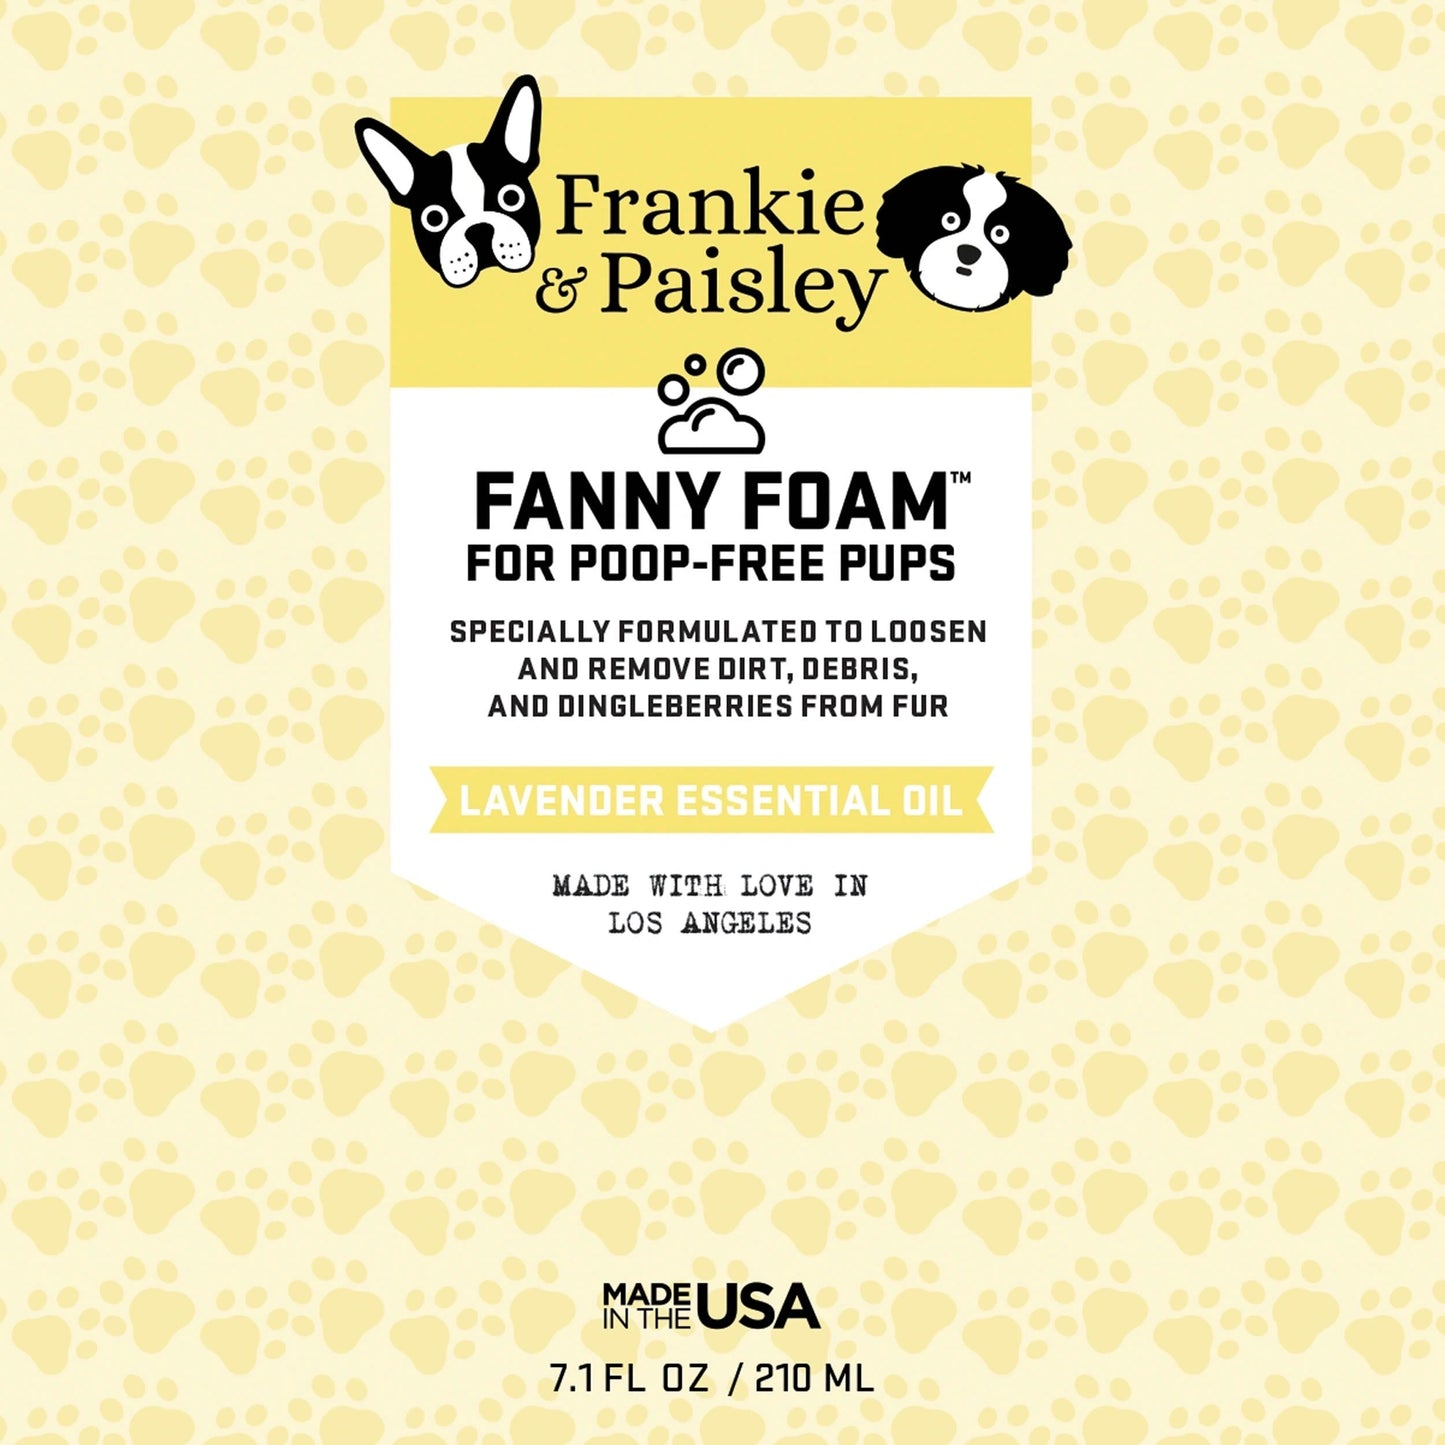 Fanny Foam by Frankie & Paisley